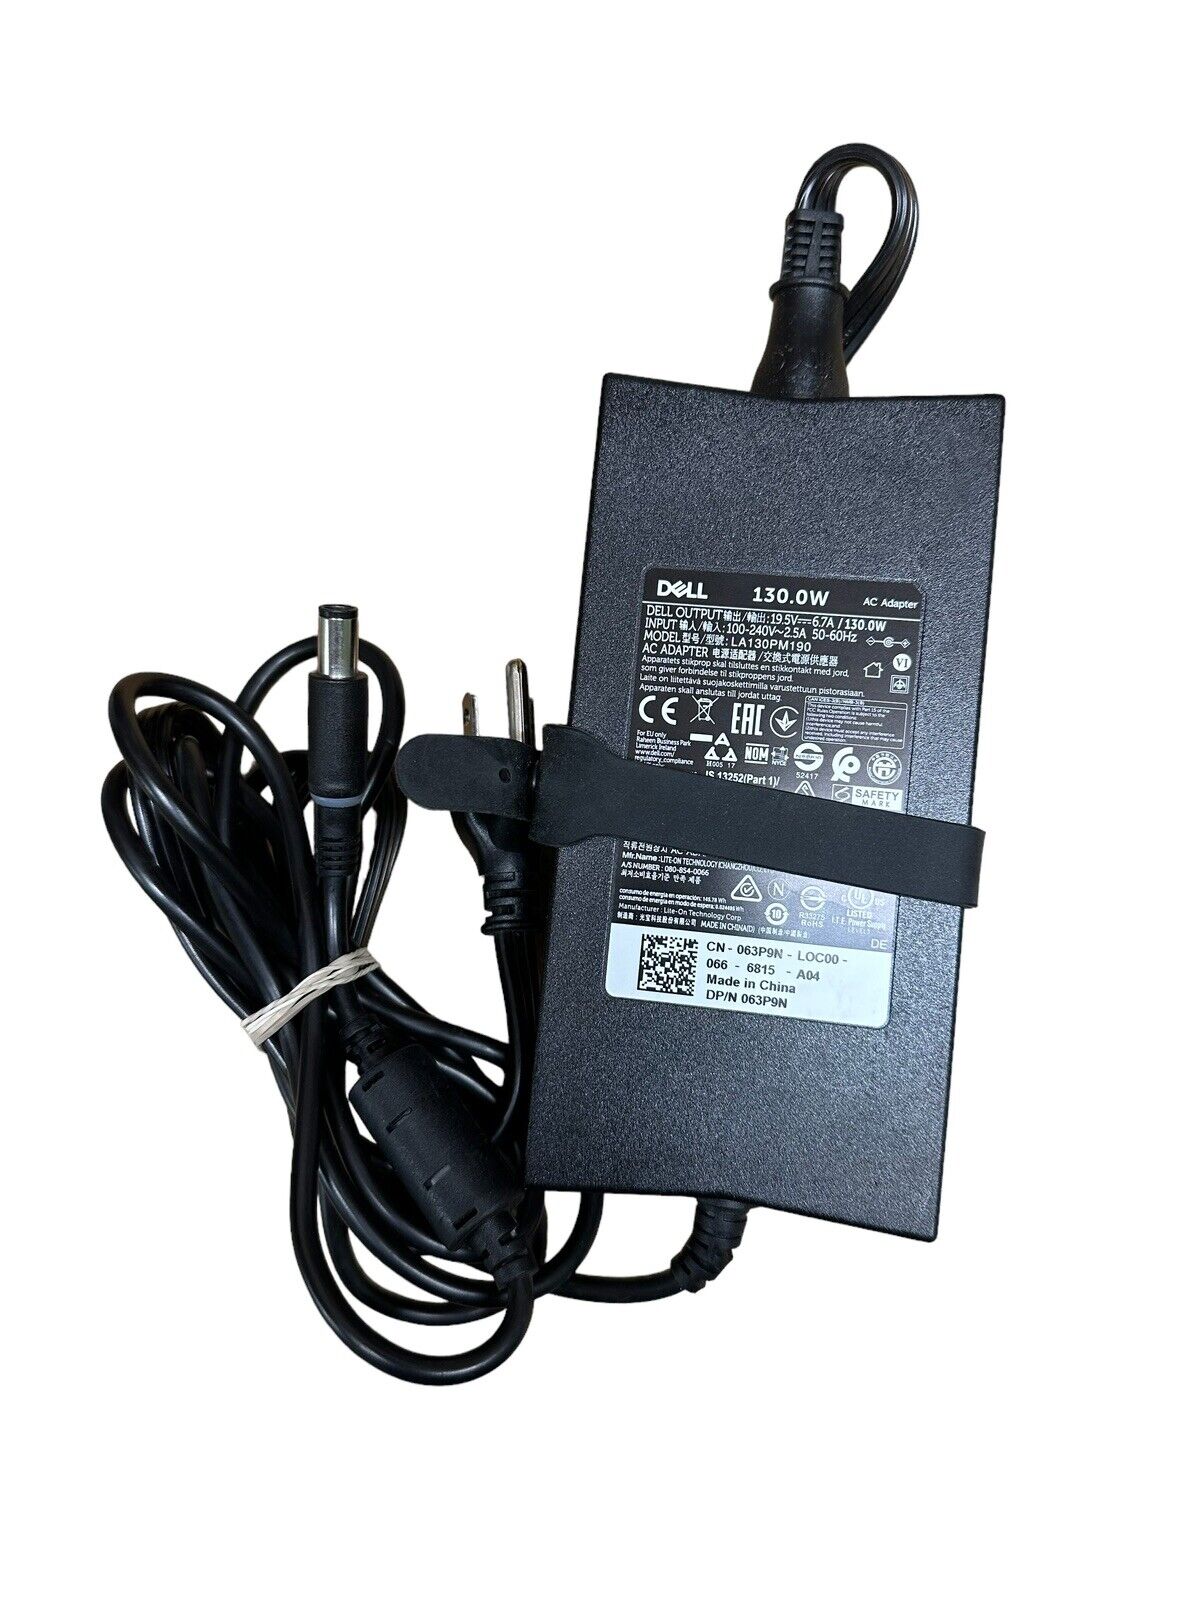 Lot of 15 Genuine Dell AC Power Adapter LA130PM121 130W, 19.5V-6.7A Black #L1331